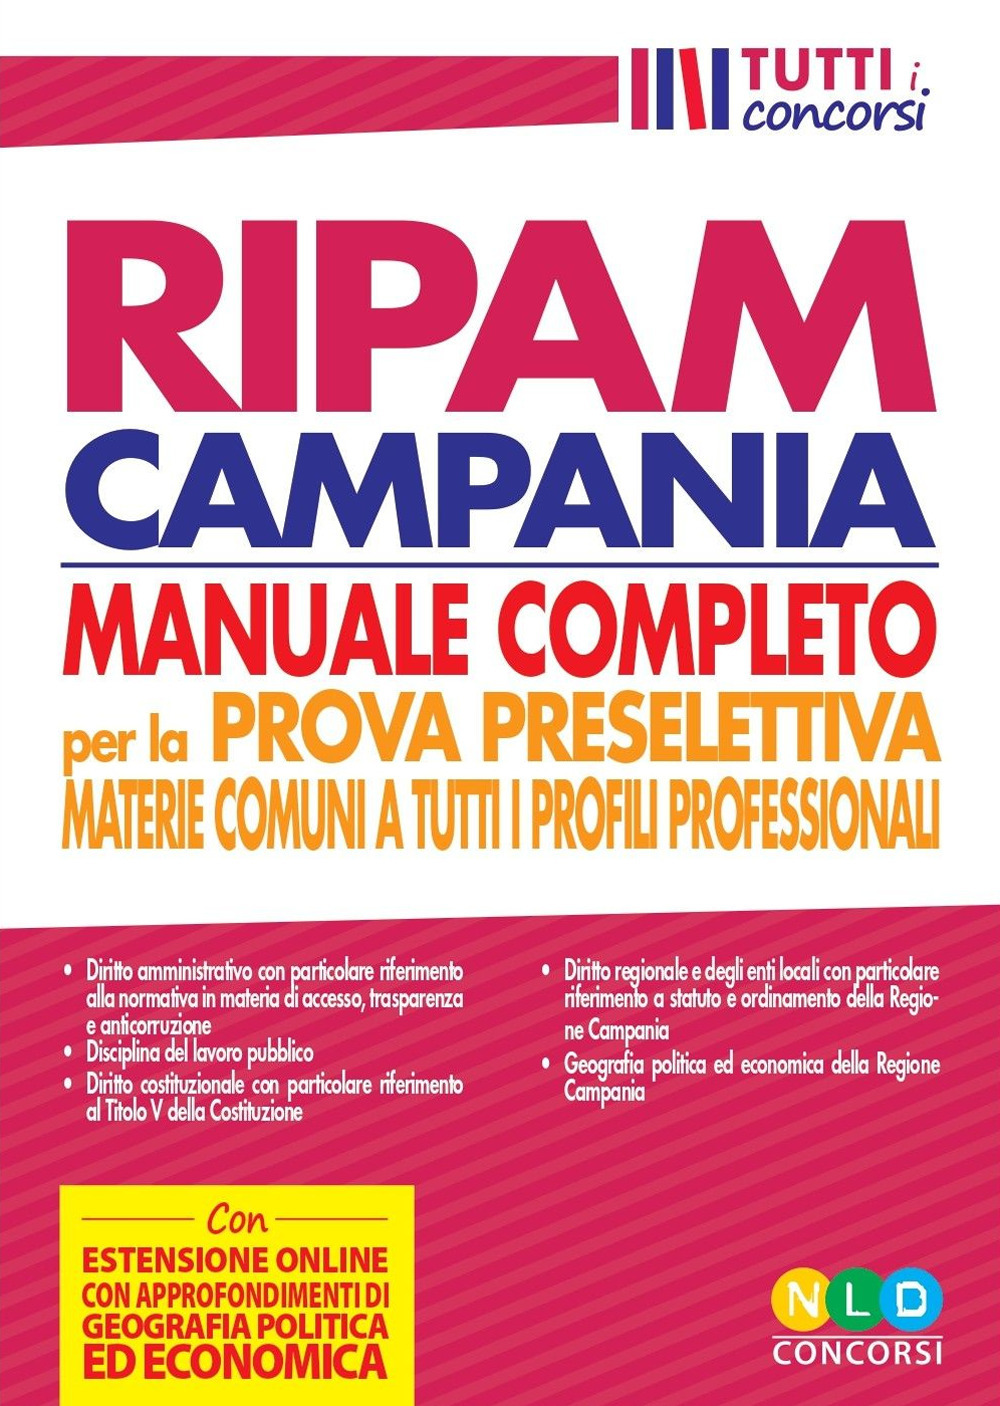 Concorso regione Campania. Manuale RIPAM completo per la prova preselettiva. Materie comuni a tutti i profili professionali